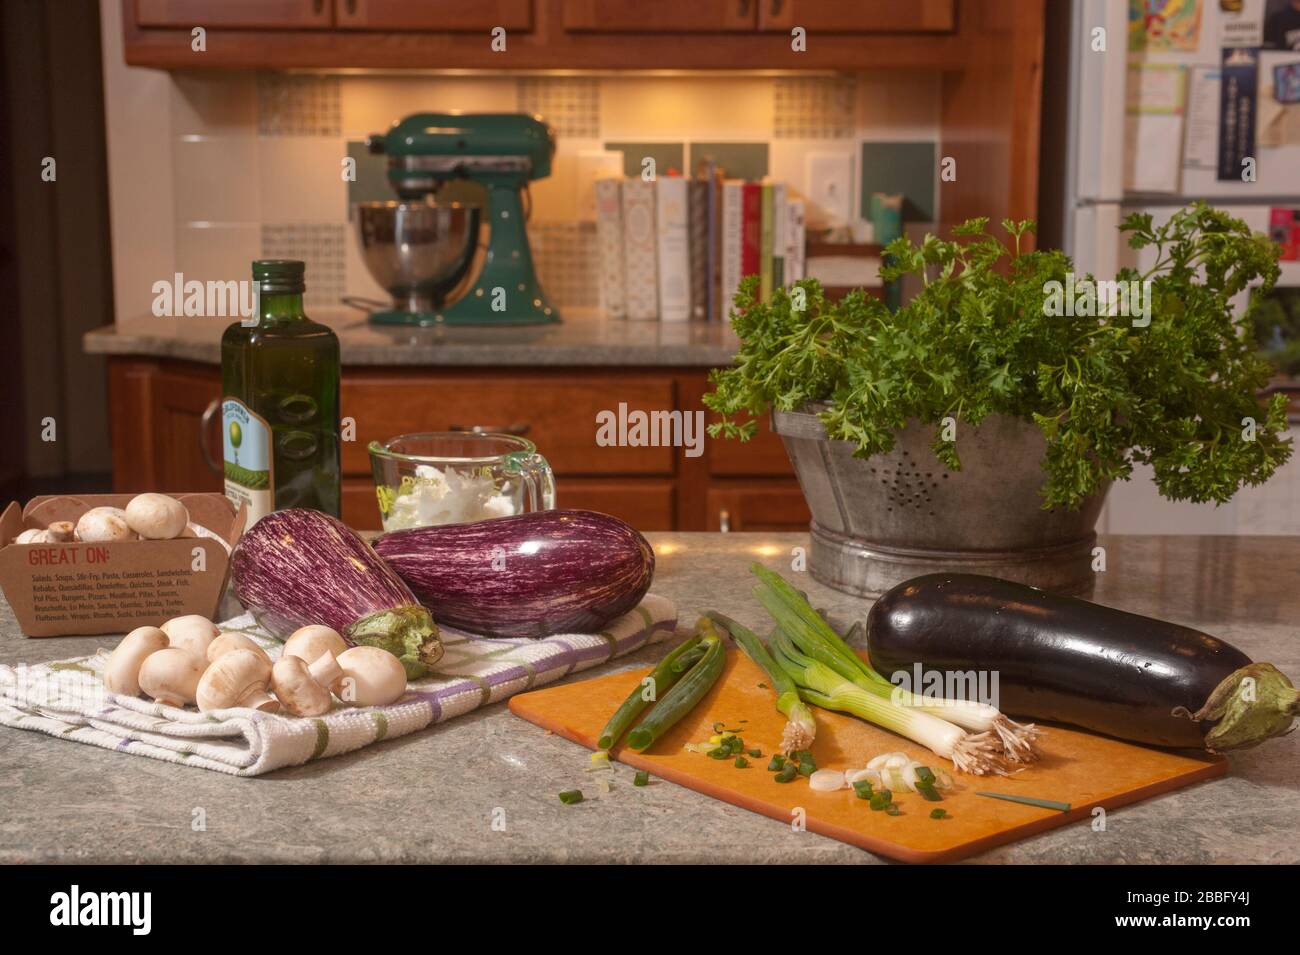 Aubergines, champignons, échalotes, huile et espaces sur le comptoir de cuisine. Préparation de la nourriture pour faire baba ganoush. Banque D'Images